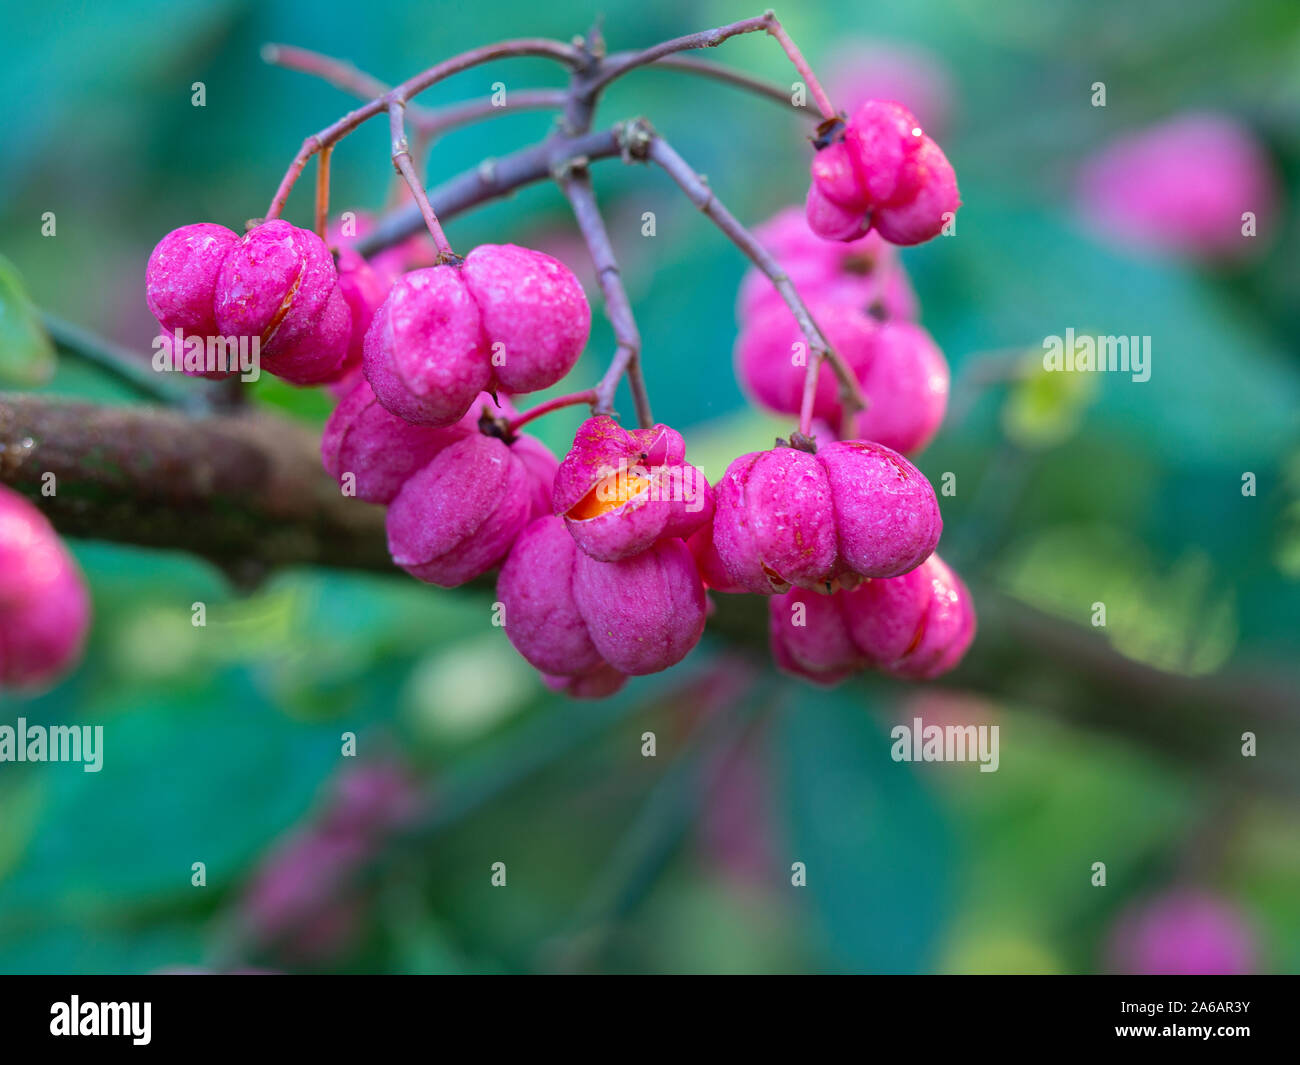 Libre de belles baies roses lobée de l'arbre de fusée (Euonymus europaea) avec l'un des petits fruits pour révéler le fractionnement à l'intérieur des fruits orange Banque D'Images